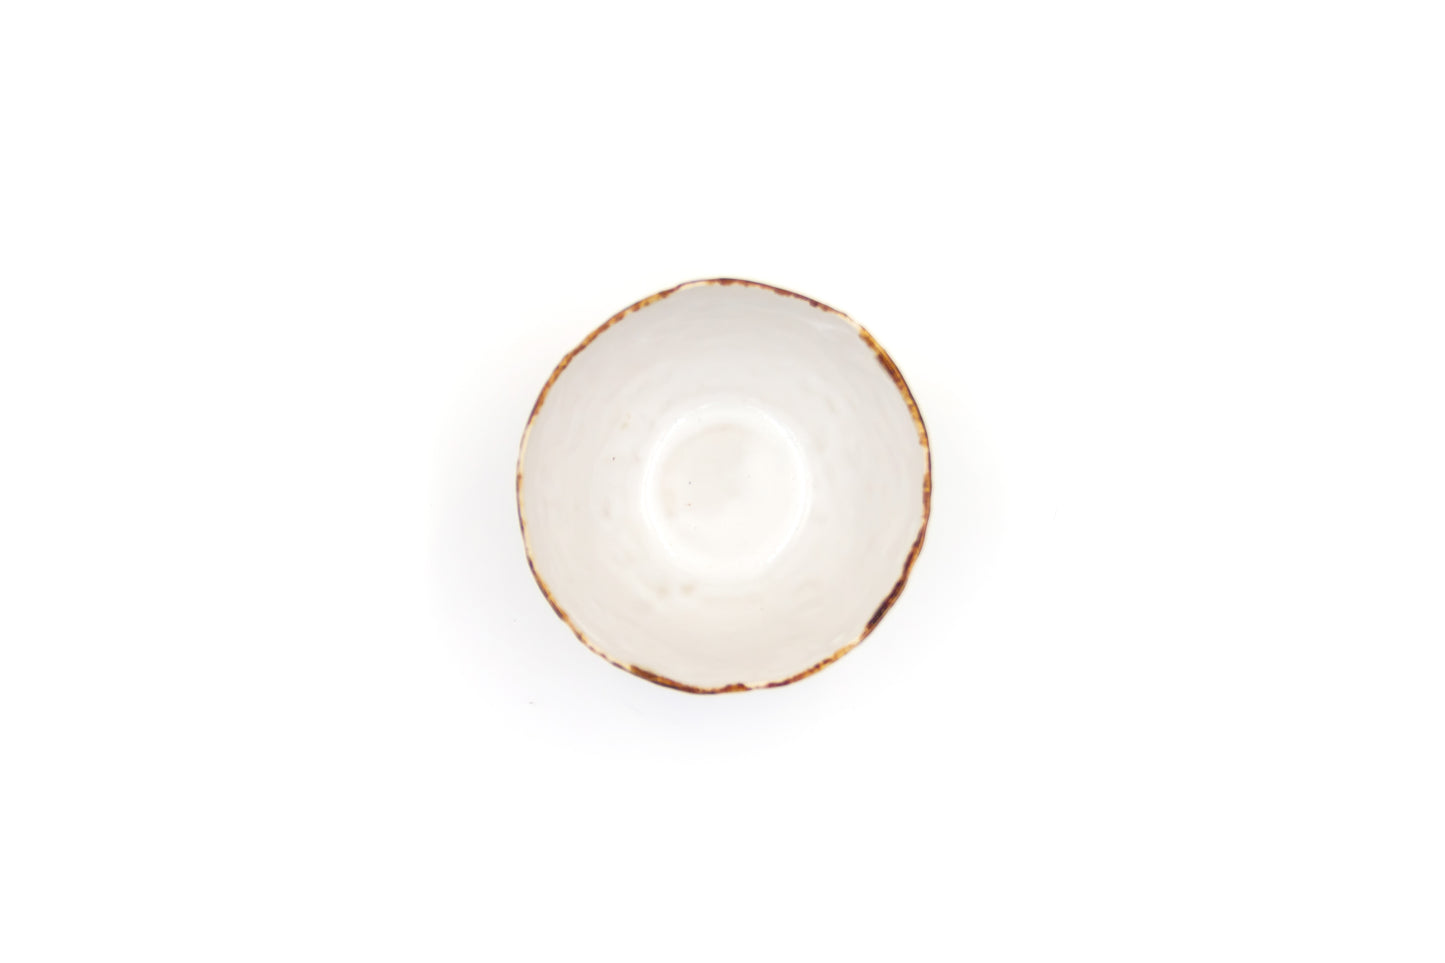 Miseczka ceramiczna w kolorze biało-brązowym